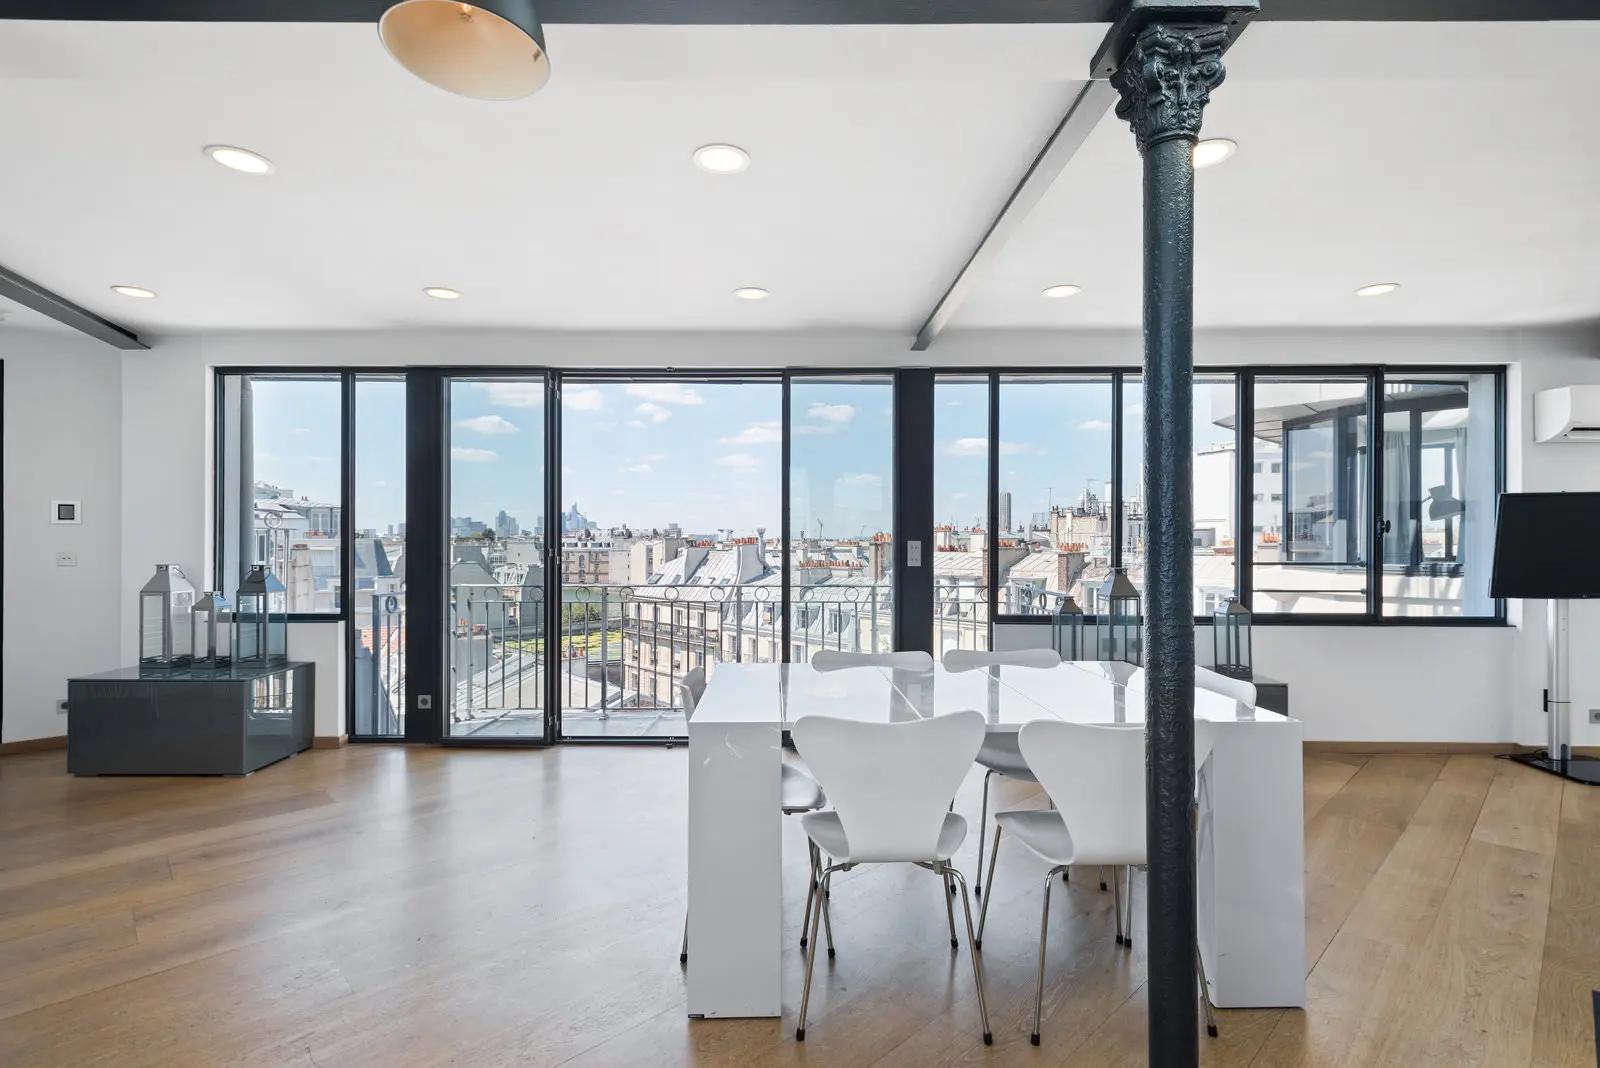 Comedor dentro Moderno loft con vistas de 360° de París y la Torre Eiffel - 4